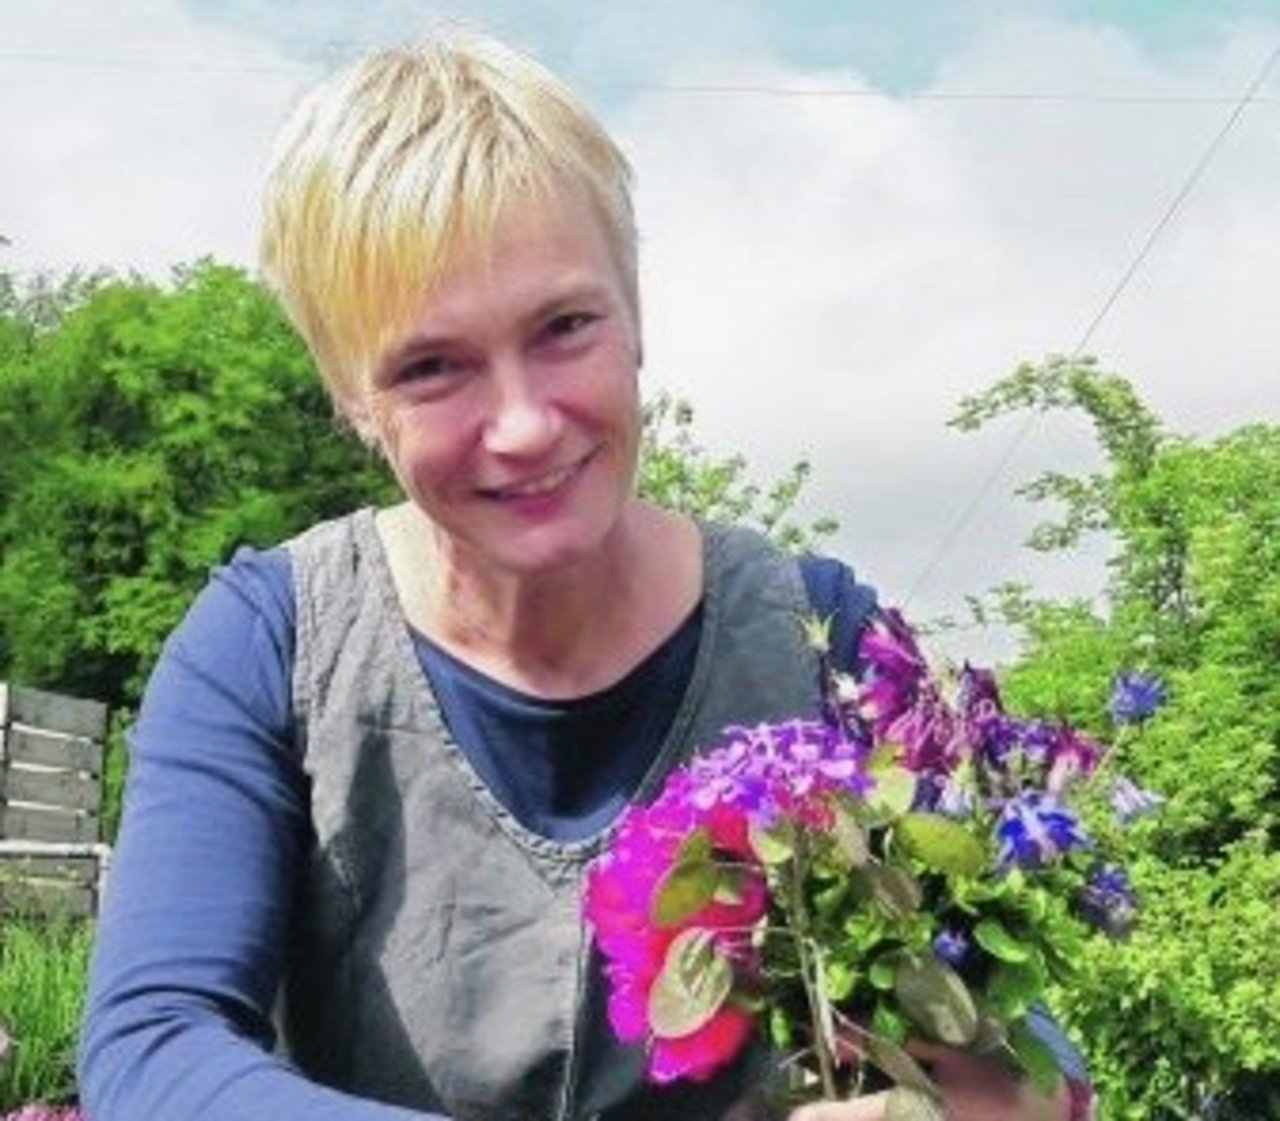 Regula Strasser schneidet in ihrem Garten Blumen für Dekorationen in der Kirche. Früher hat sie sich nicht sonderlich für Pflanzen interessiert. Heute ist sie davon fasziniert. (Bild Deborah Rentsch)